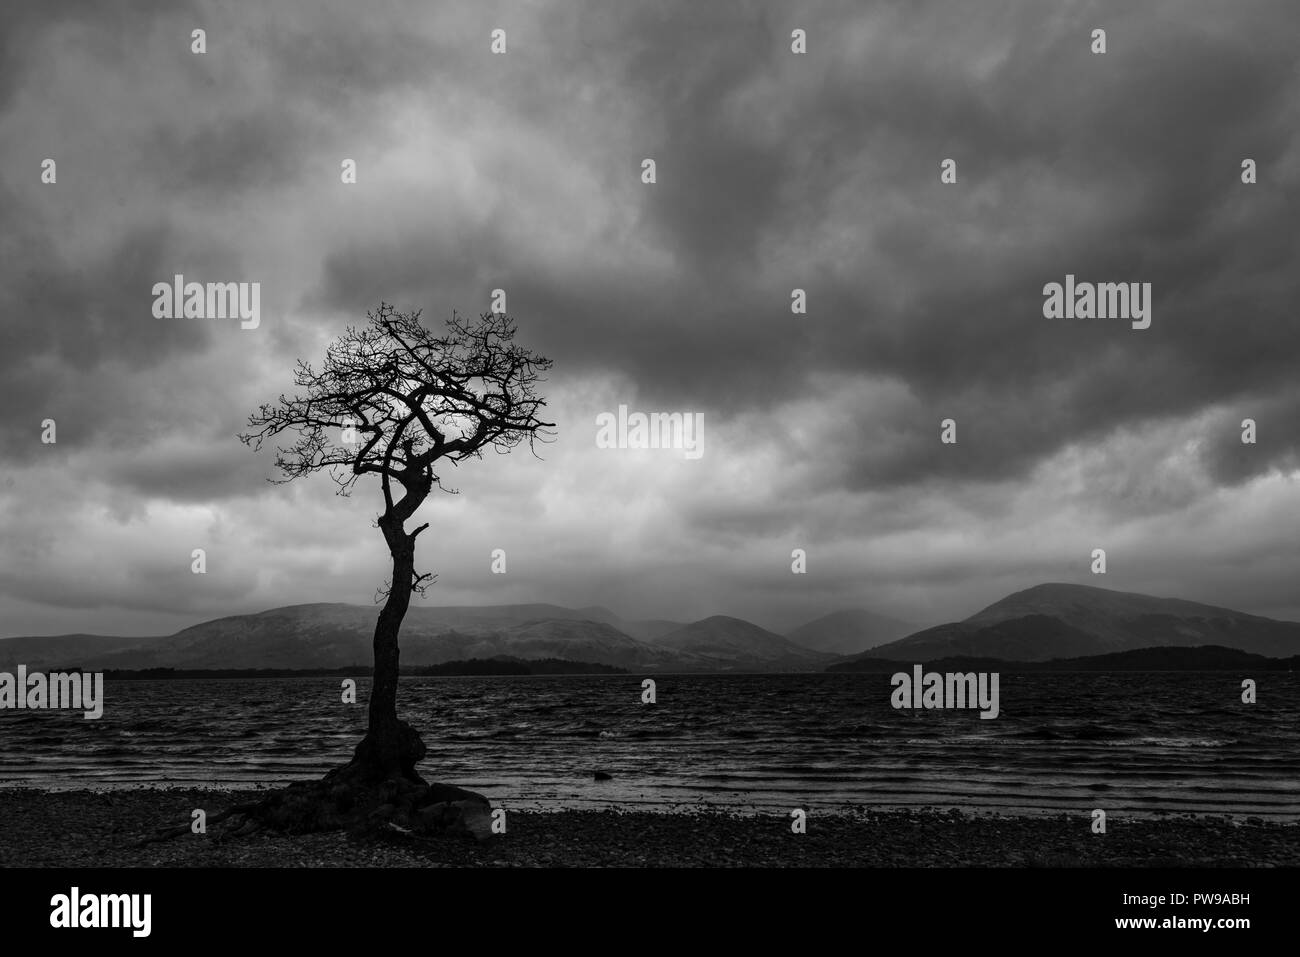 Arbre de chêne sessile solitaire pendant heure bleue, millarrochy bay, Balmaha, Loch Lomond et les Trossachs National park, stirllingshire, Ecosse, Royaume-Uni Banque D'Images